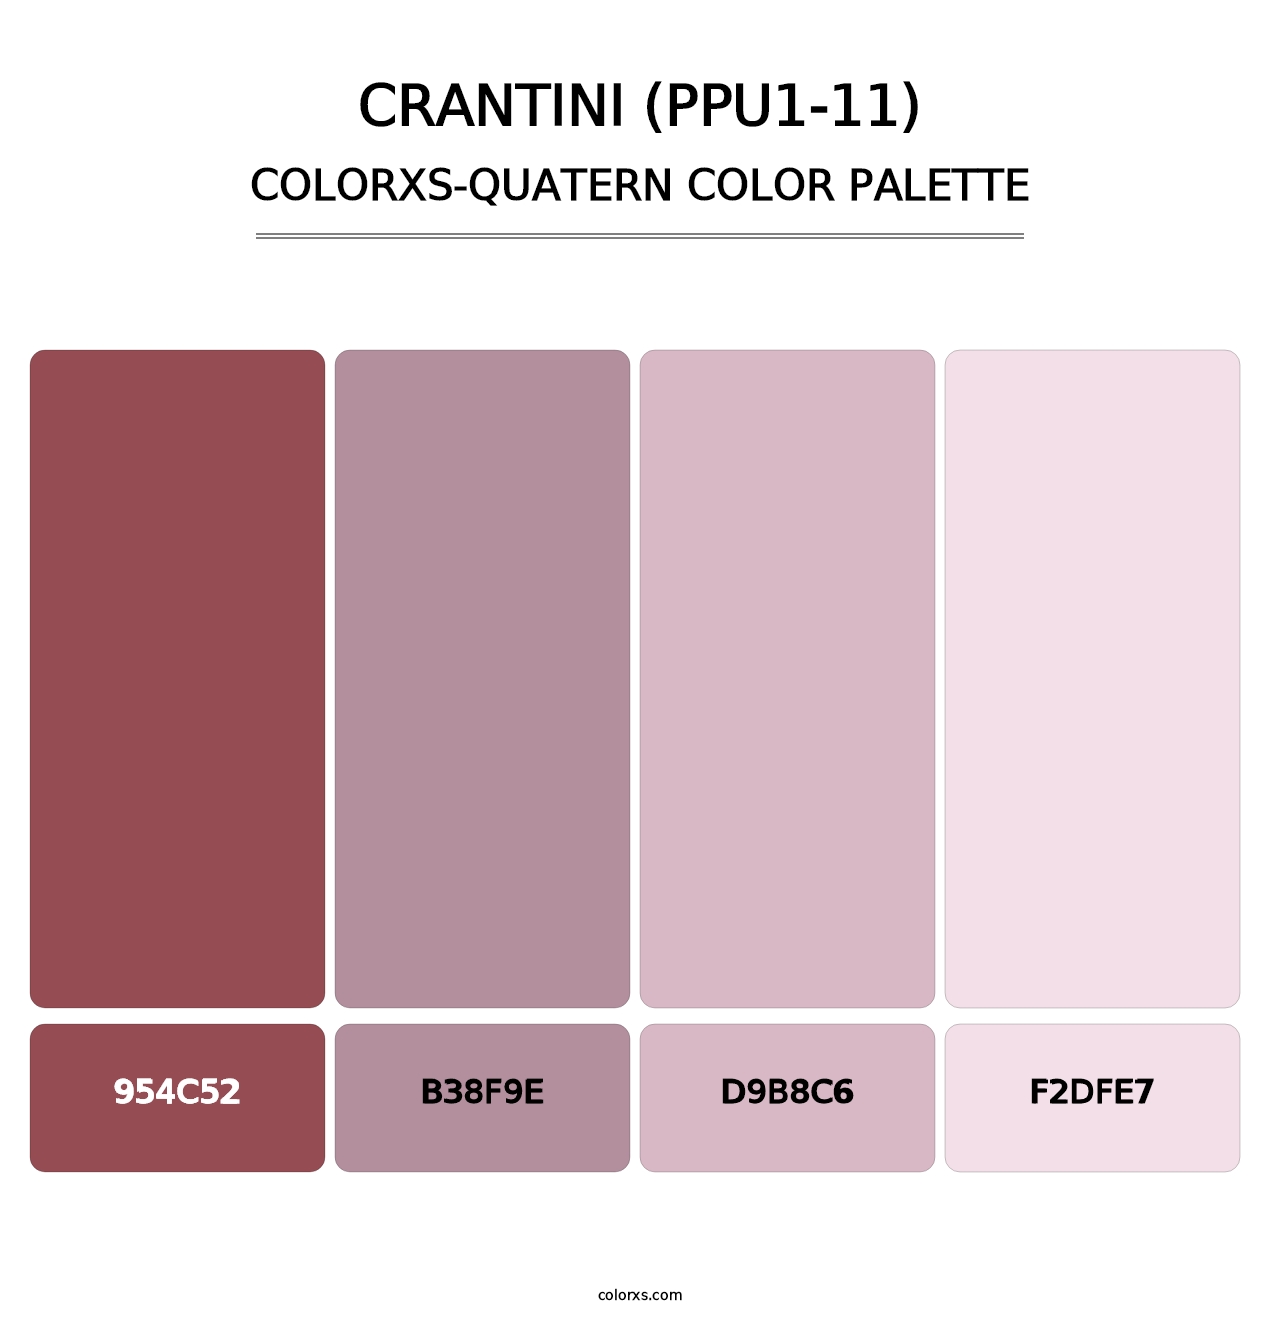 Crantini (PPU1-11) - Colorxs Quatern Palette